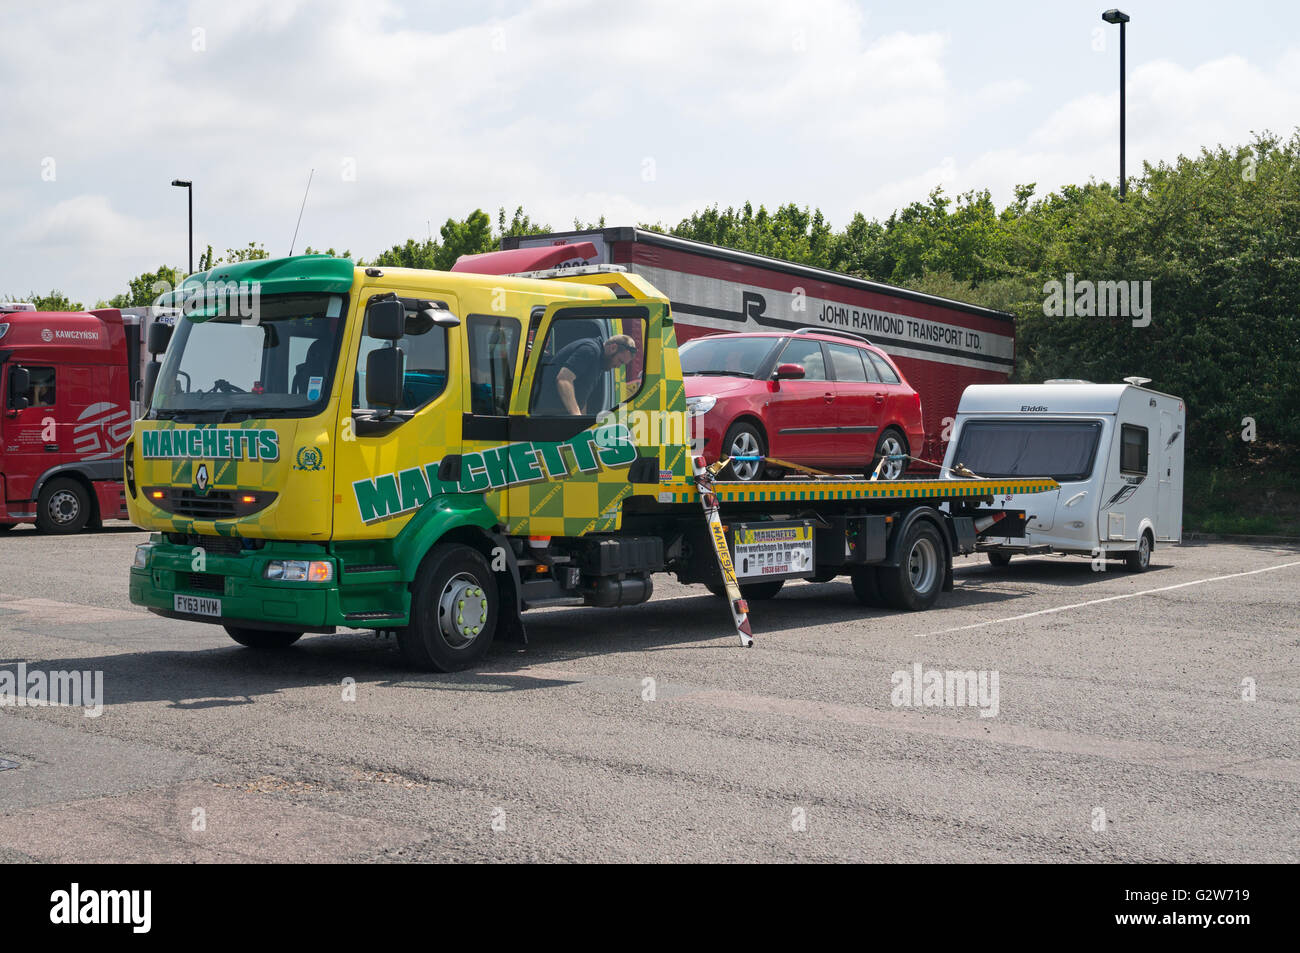 Unten gebrochen Auto auf Manchetts Renault slidebed Rettung Lkw mit Wohnwagen im Schlepptau, Autobahnraststätte, England, Großbritannien Stockfoto